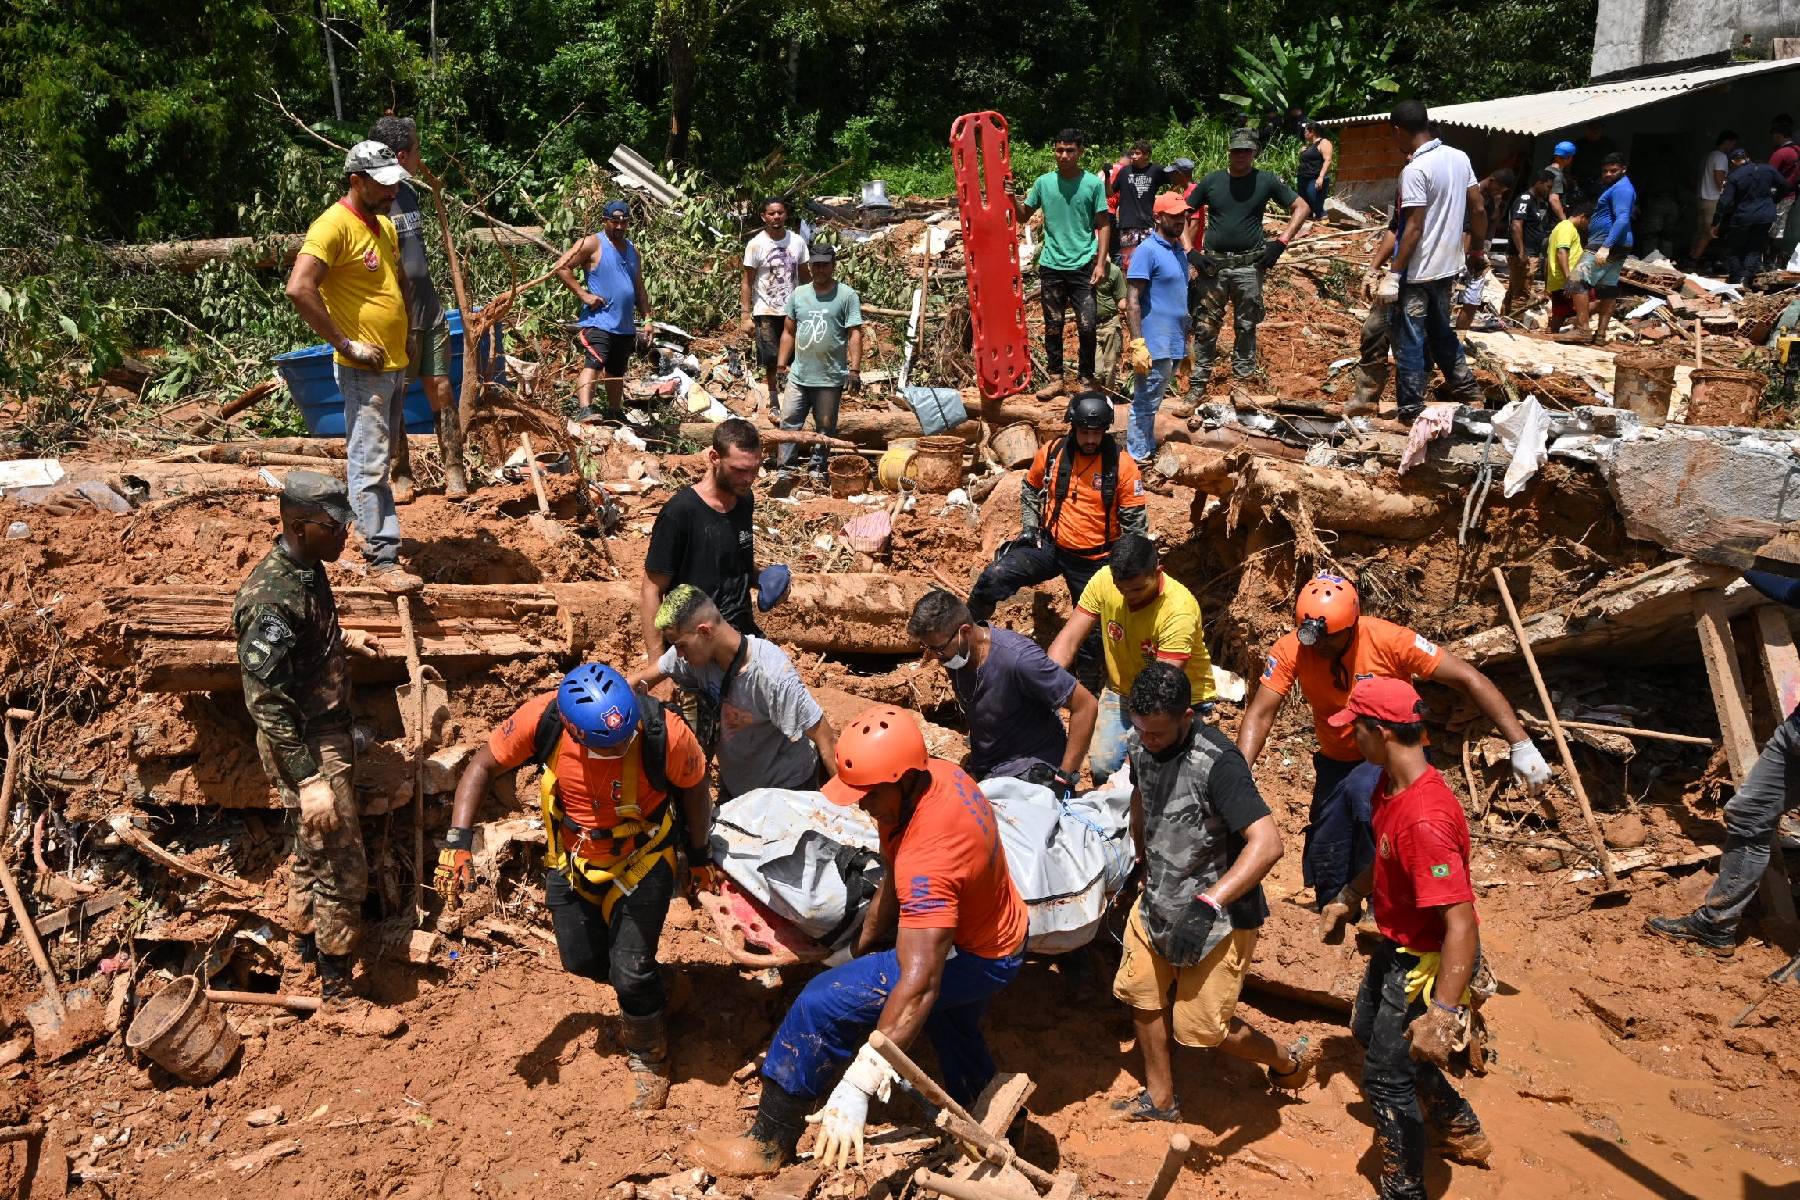 Au Brésil, les sinistrés pleurent leurs morts après une tempête apocalyptique